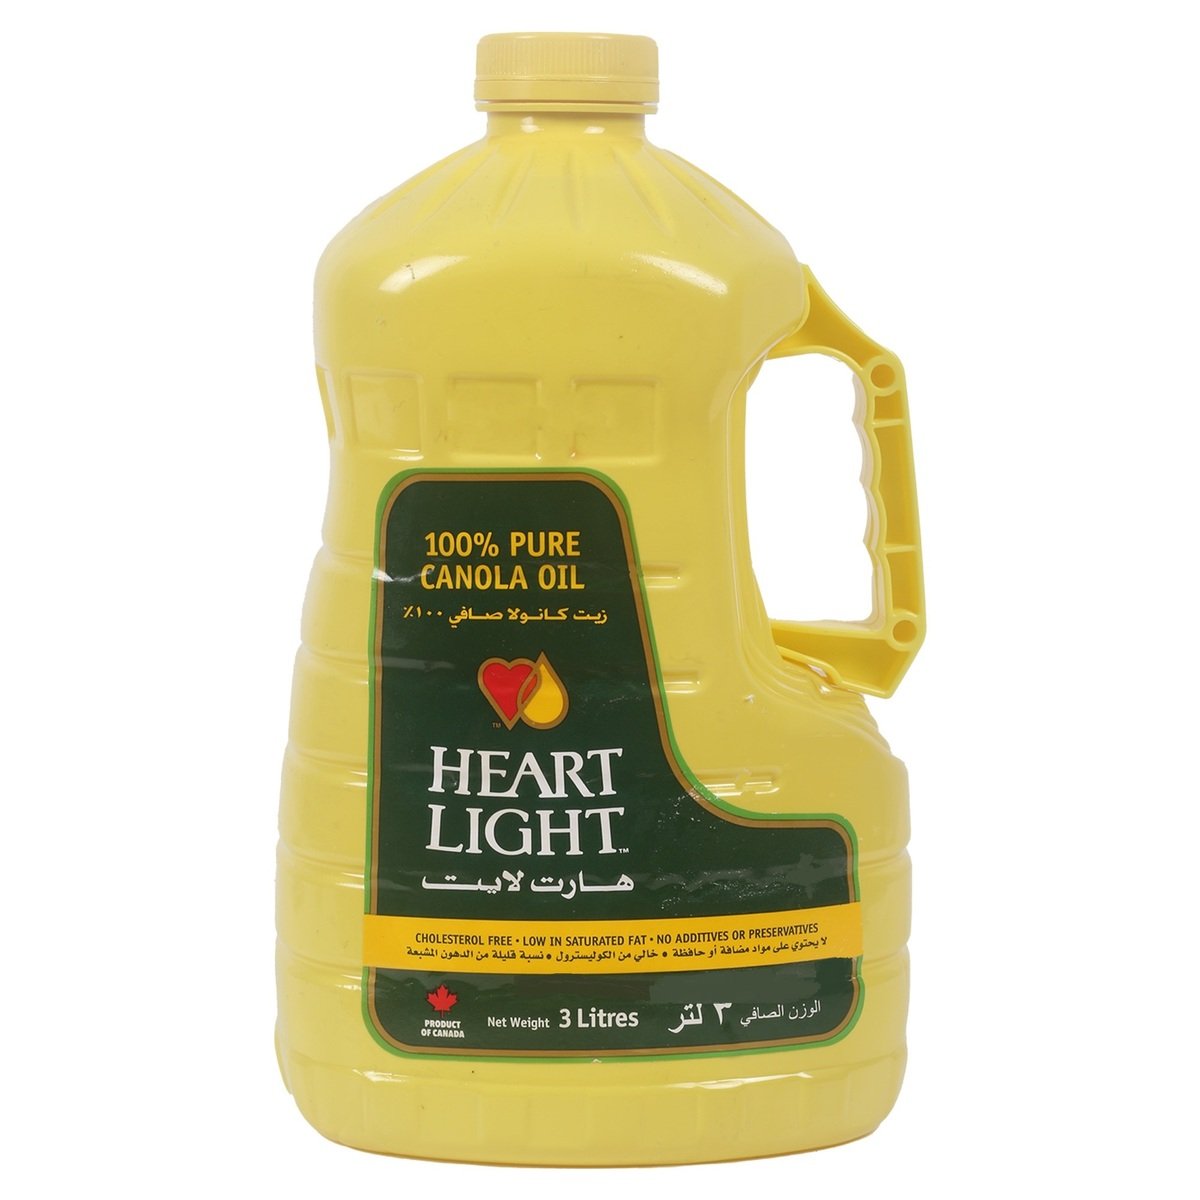 Heart Light Canola Oil Value Pack 3 Litres